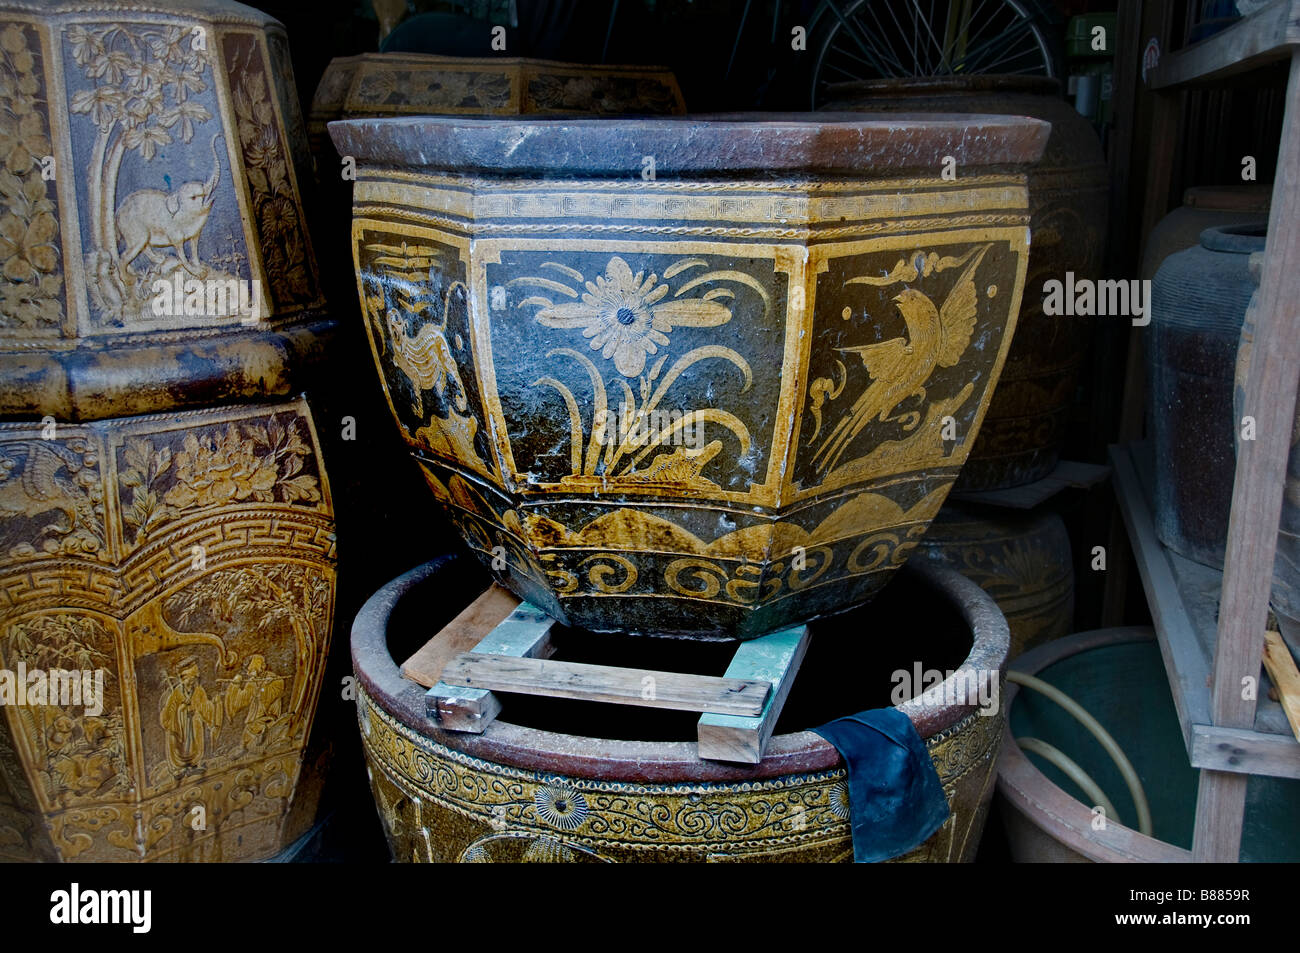 Malacca Malaysia, Chinatown China, Chinese earthenware, crockery pottery, antique shop Stock Photo